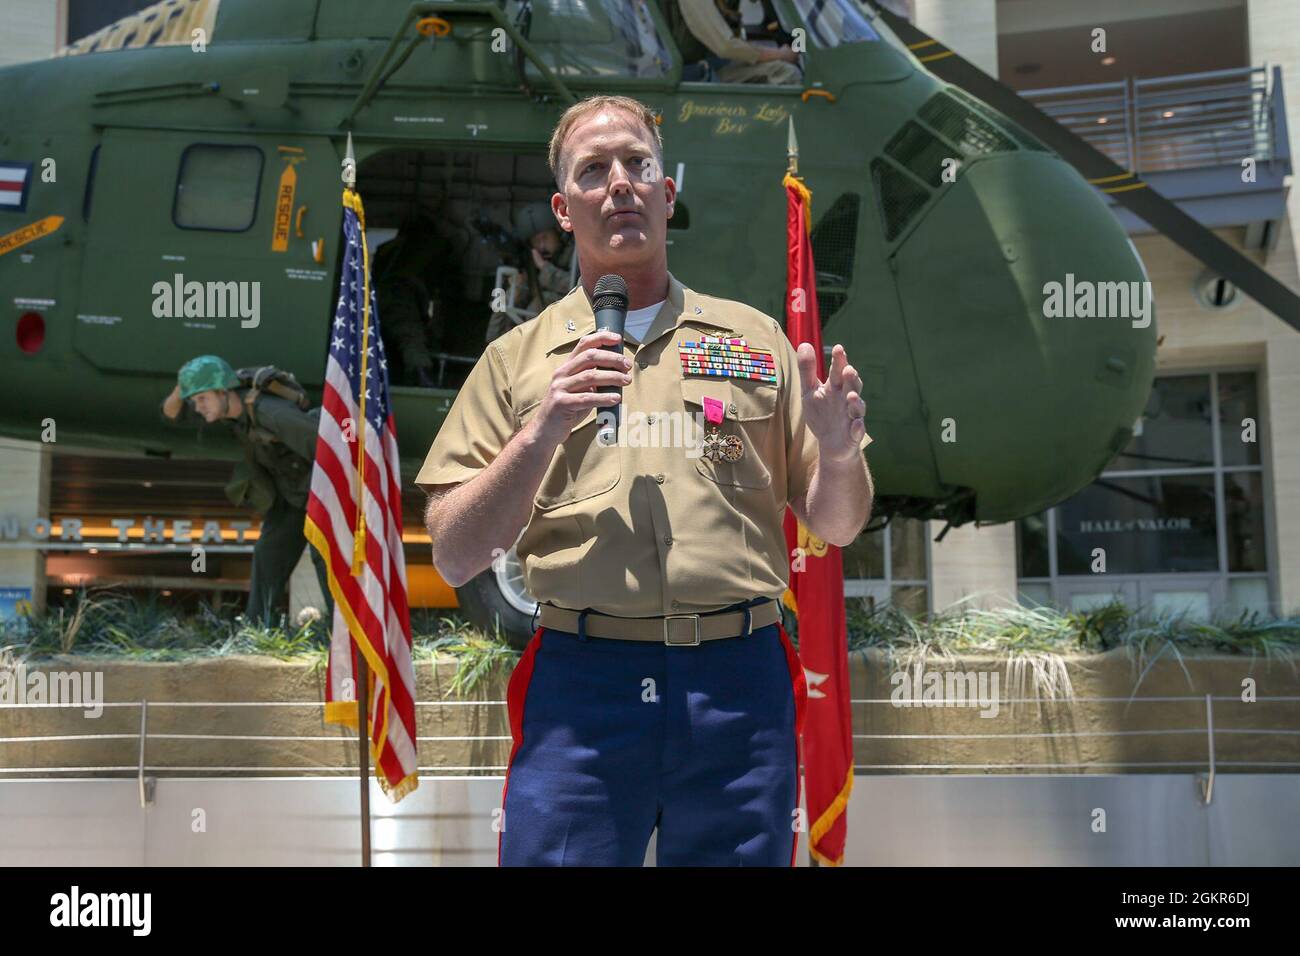 US Marine Corps Col. Kurt J. Schiller, Direktor der Aviation Combat Element Division, hält eine Rede während seiner Pensionierungszeremonie im National Museum of the Marine Corps, Triangle, Virginia, am 17. Juni 2021. Schiller diente ehrenhaft 33 Jahre im Marine Corps. Stockfoto